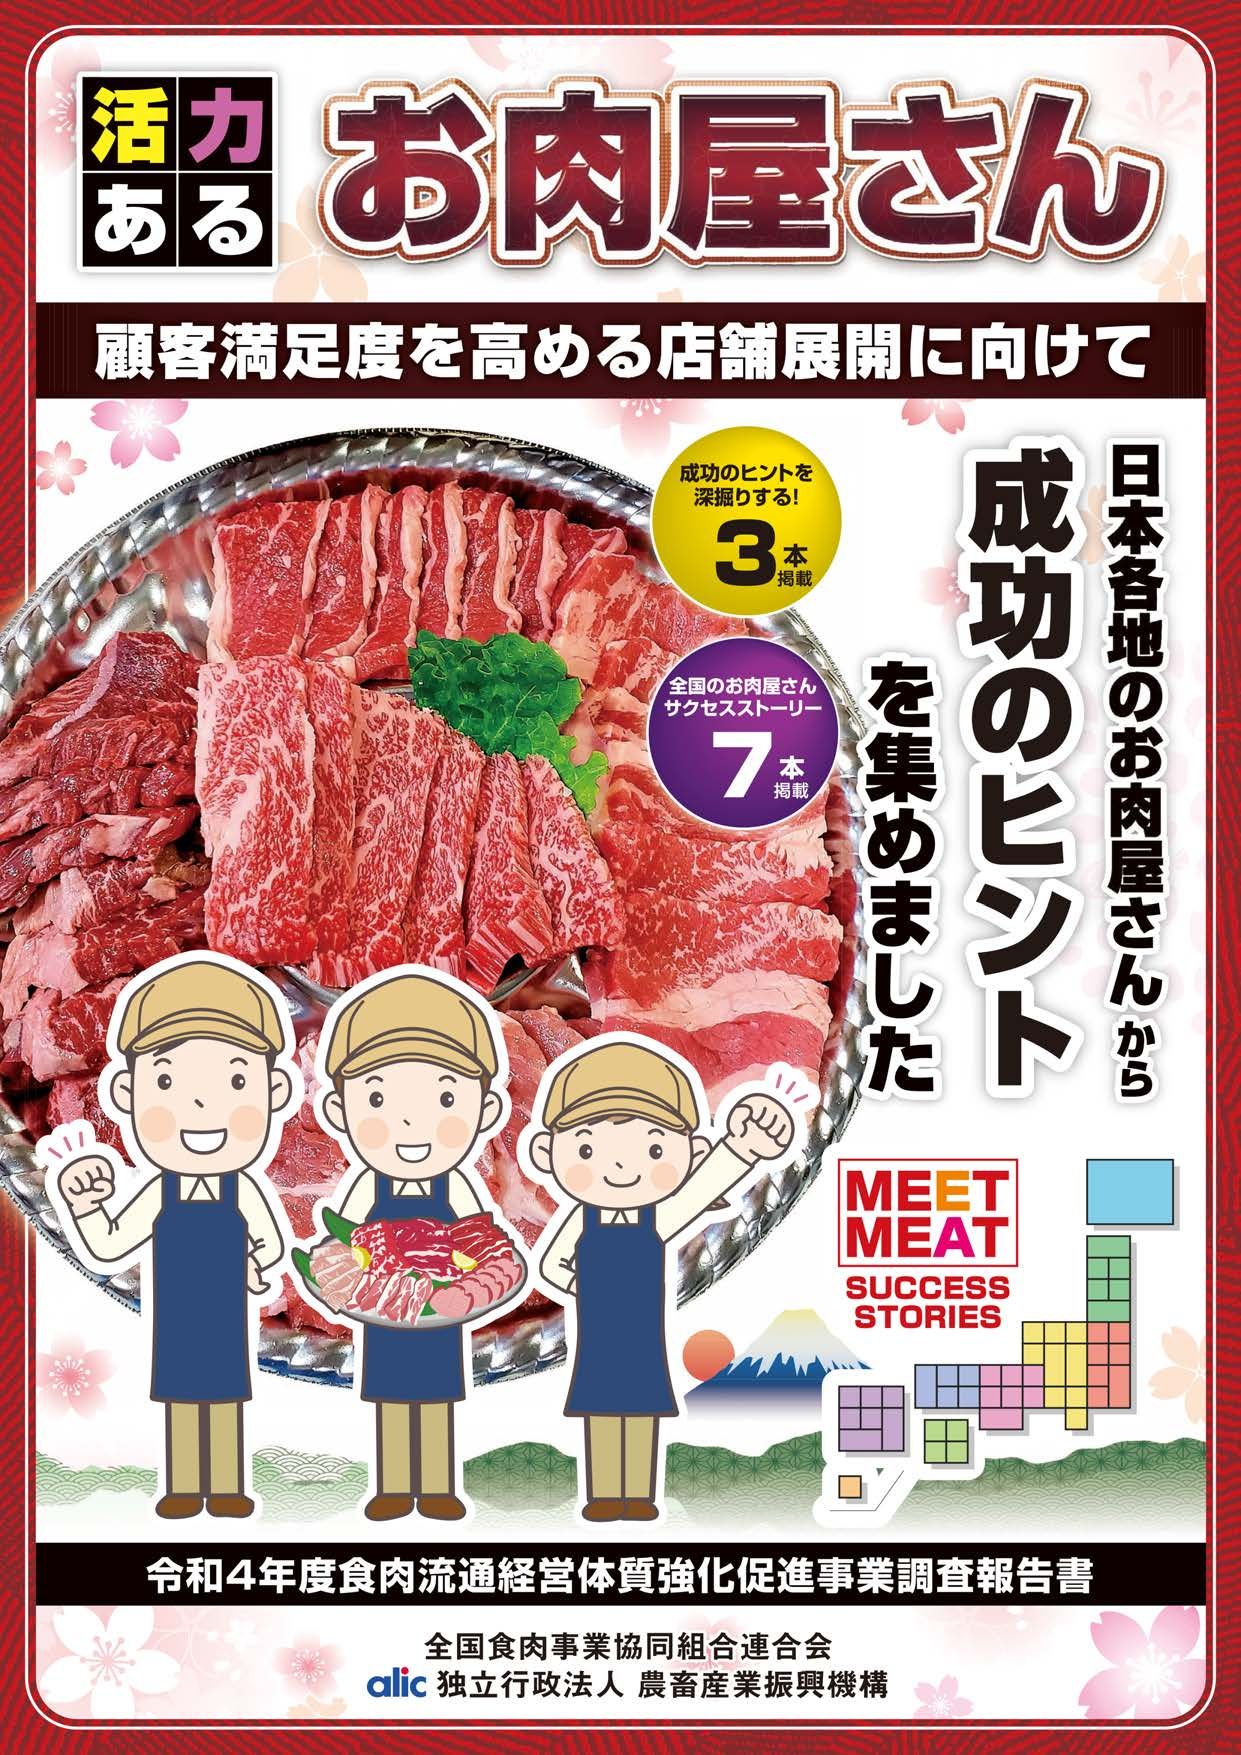 全国食肉事業協同組合連合会「活力あるお肉屋さん-顧客満足度を高める店舗展開に向けて」